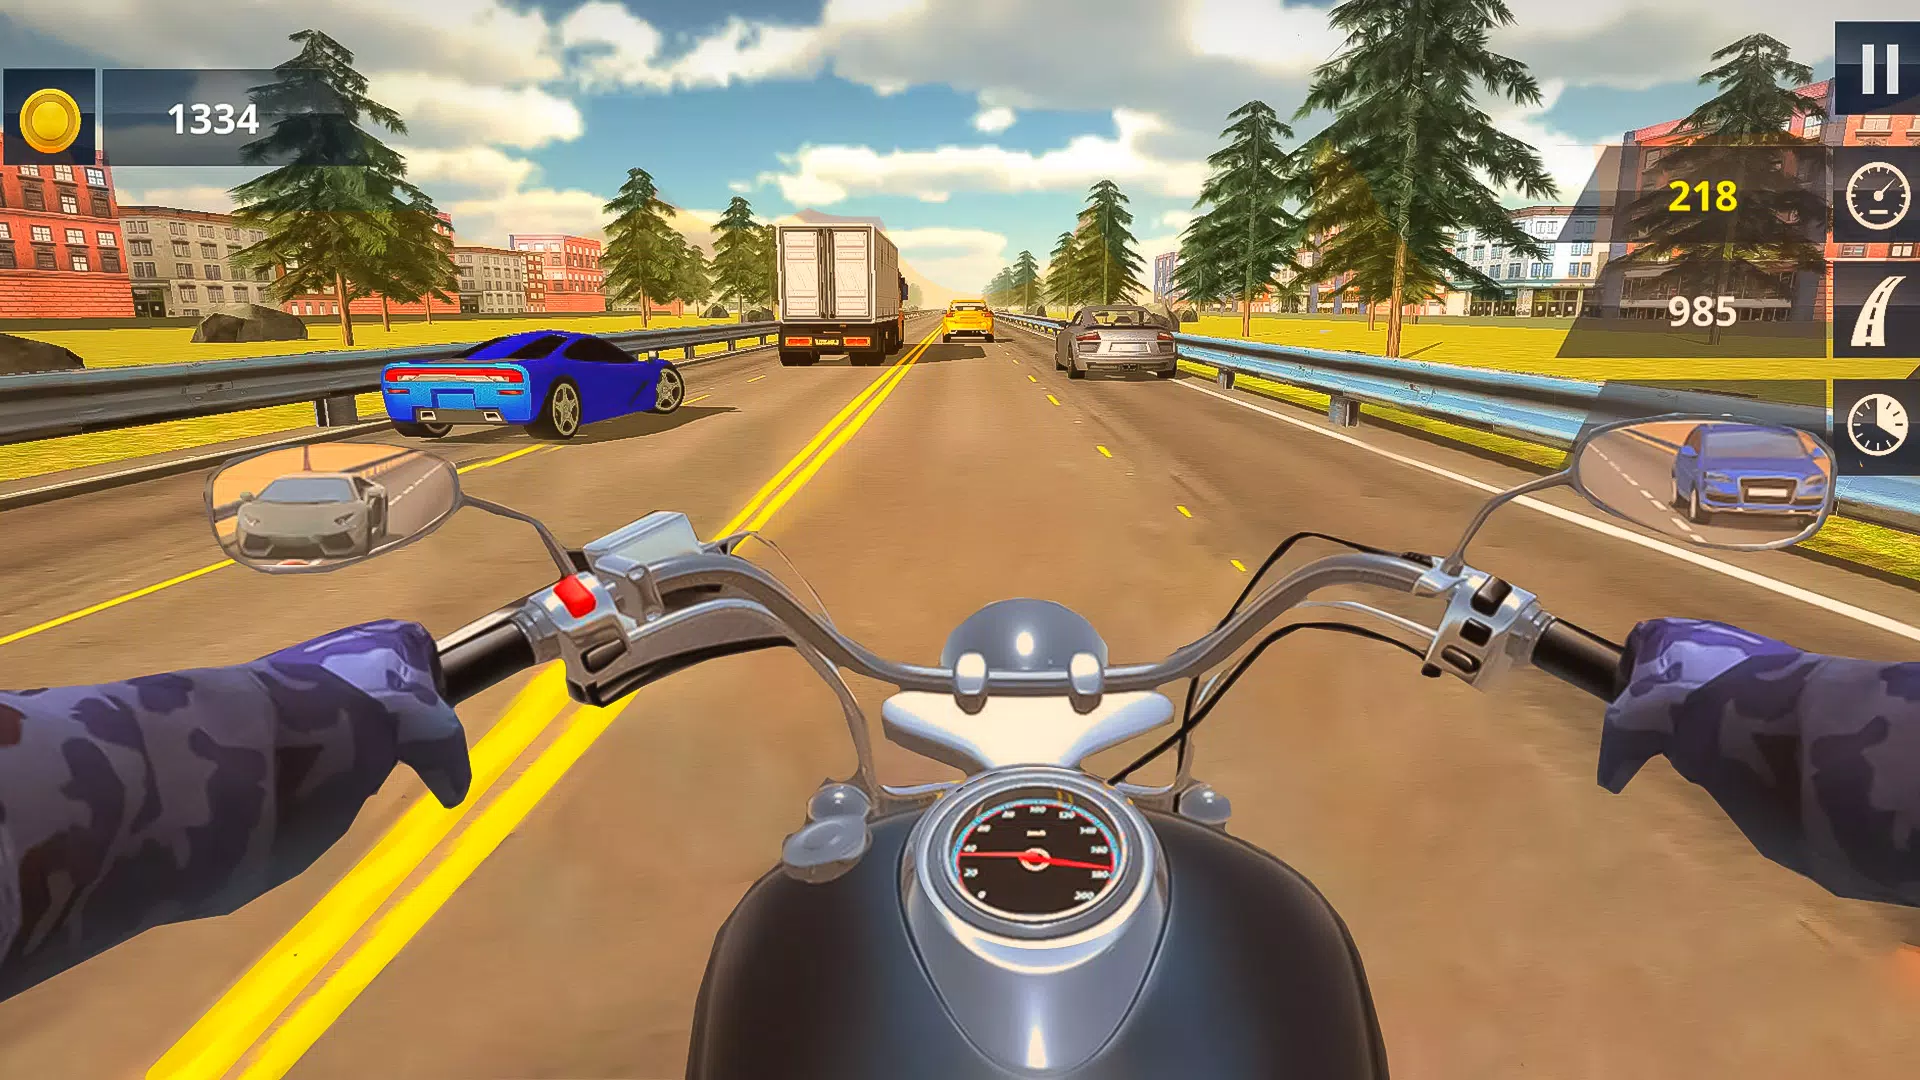 Mega Jogo de Motos Com Gráficos Incríveis Para Android – Moto Traffic Bike  Race Game 3d 